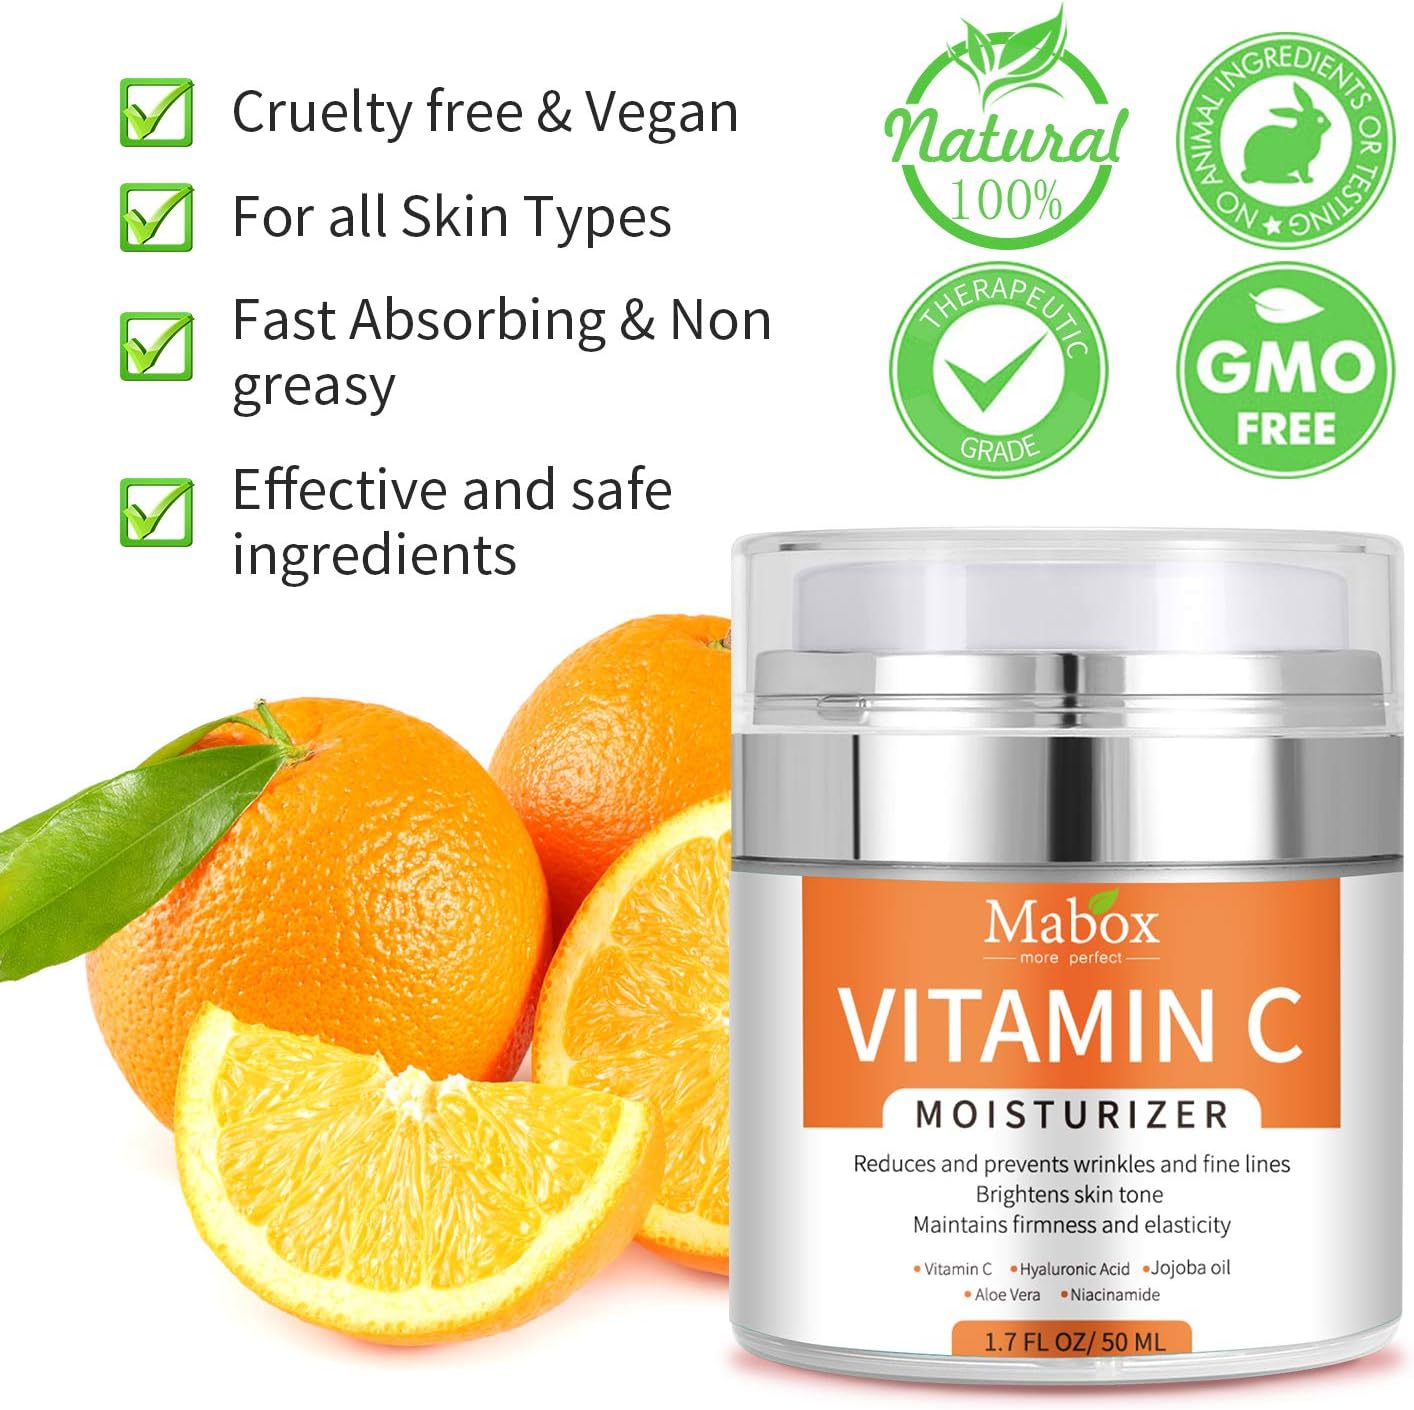 Goreem Vitamin C Moisturizer Anti Aging & Wrinkle Cream for Moisturizing Face & Body for Men & Women